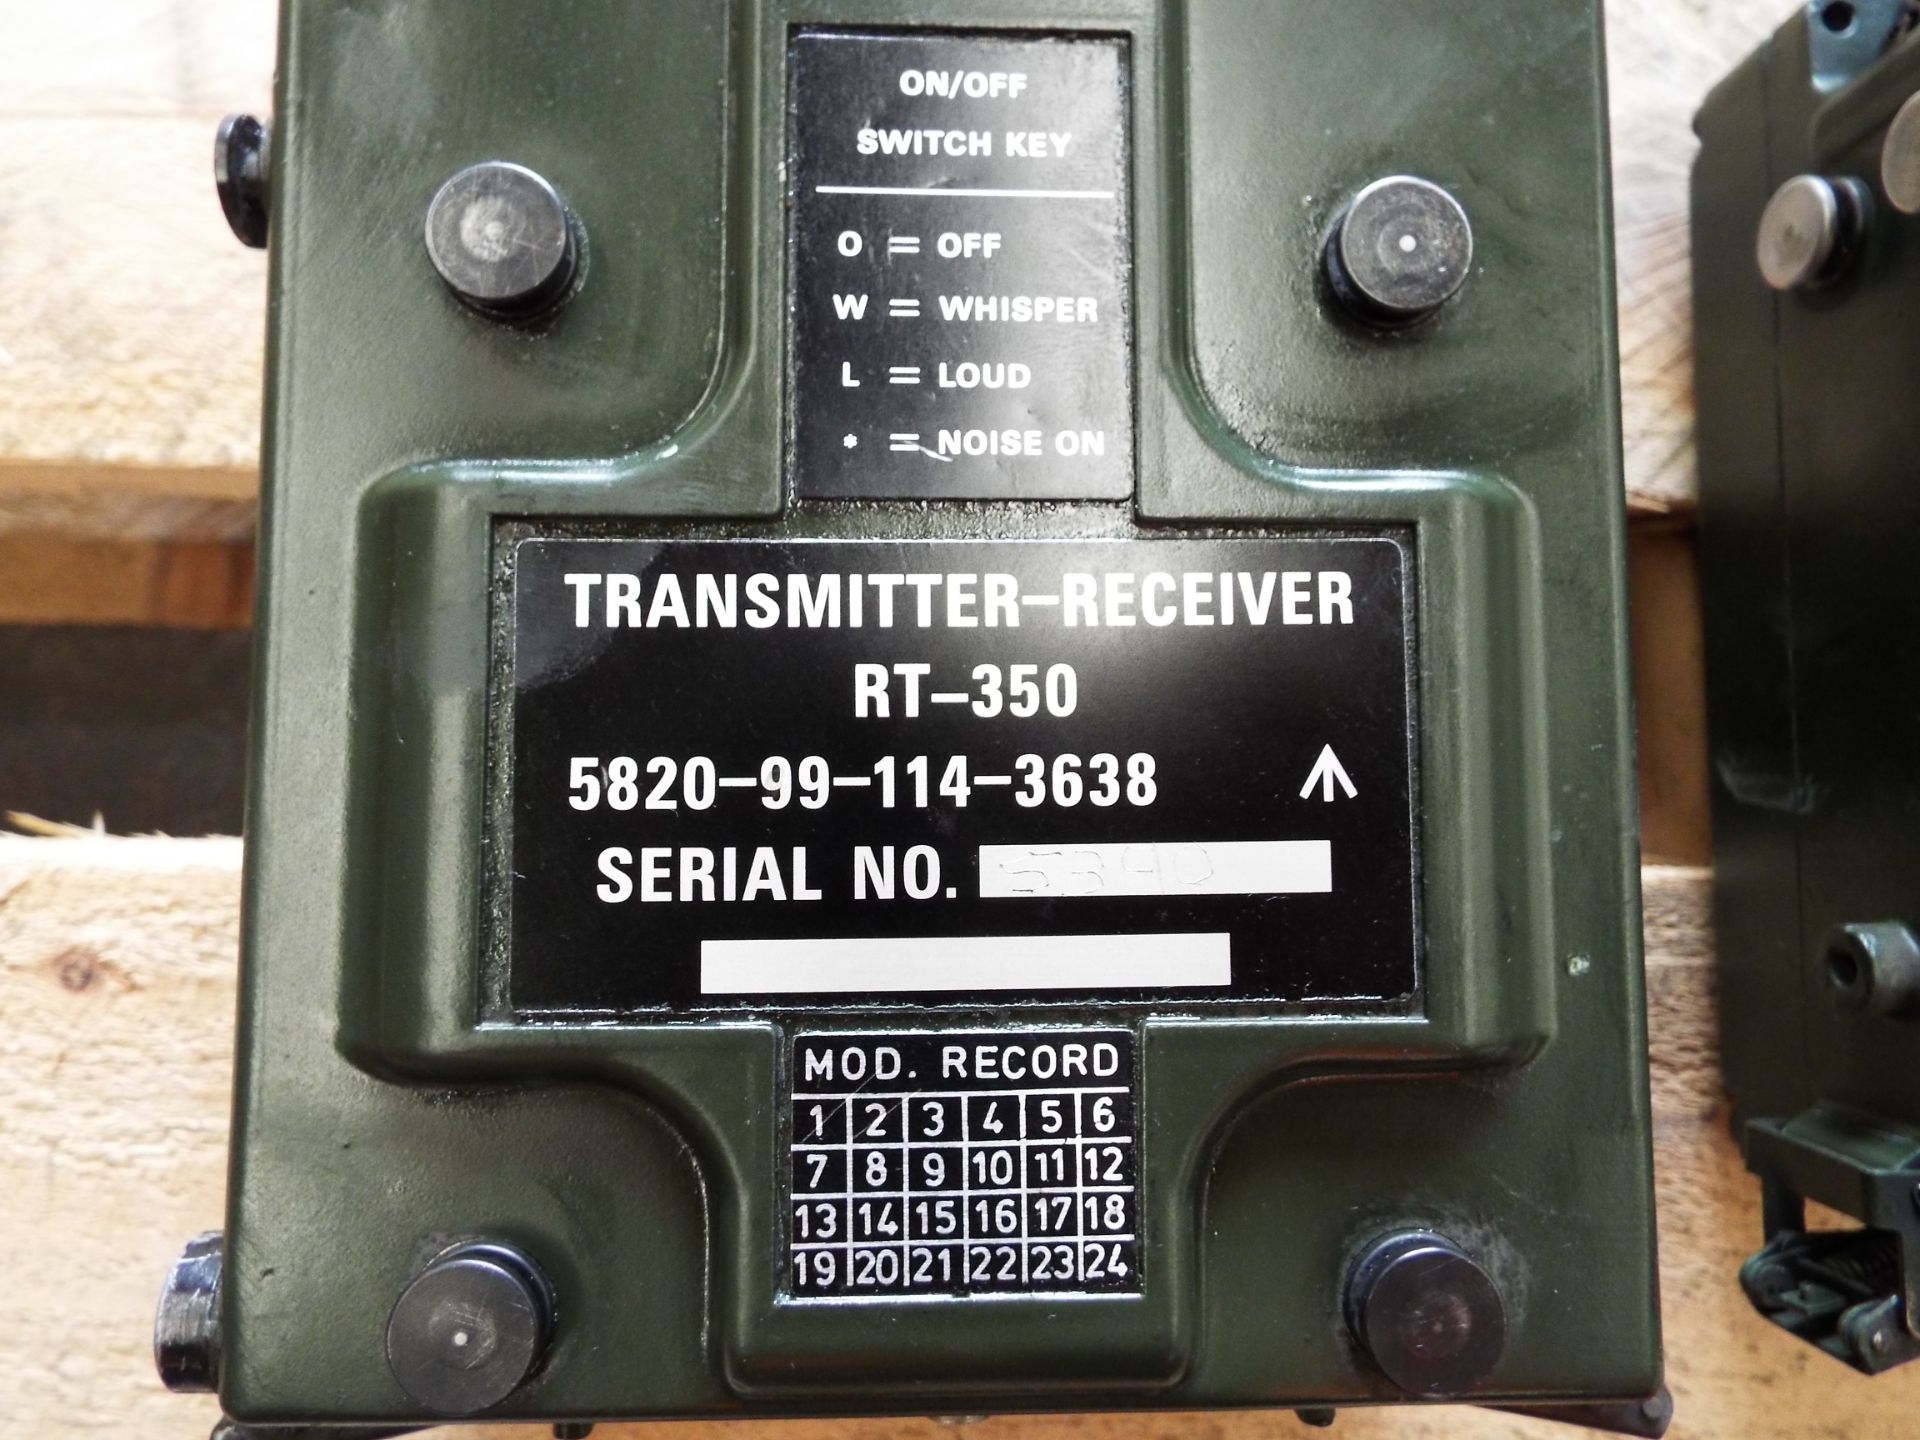 3 x Clansman RT- 350 Transmitter Receivers - Image 2 of 4